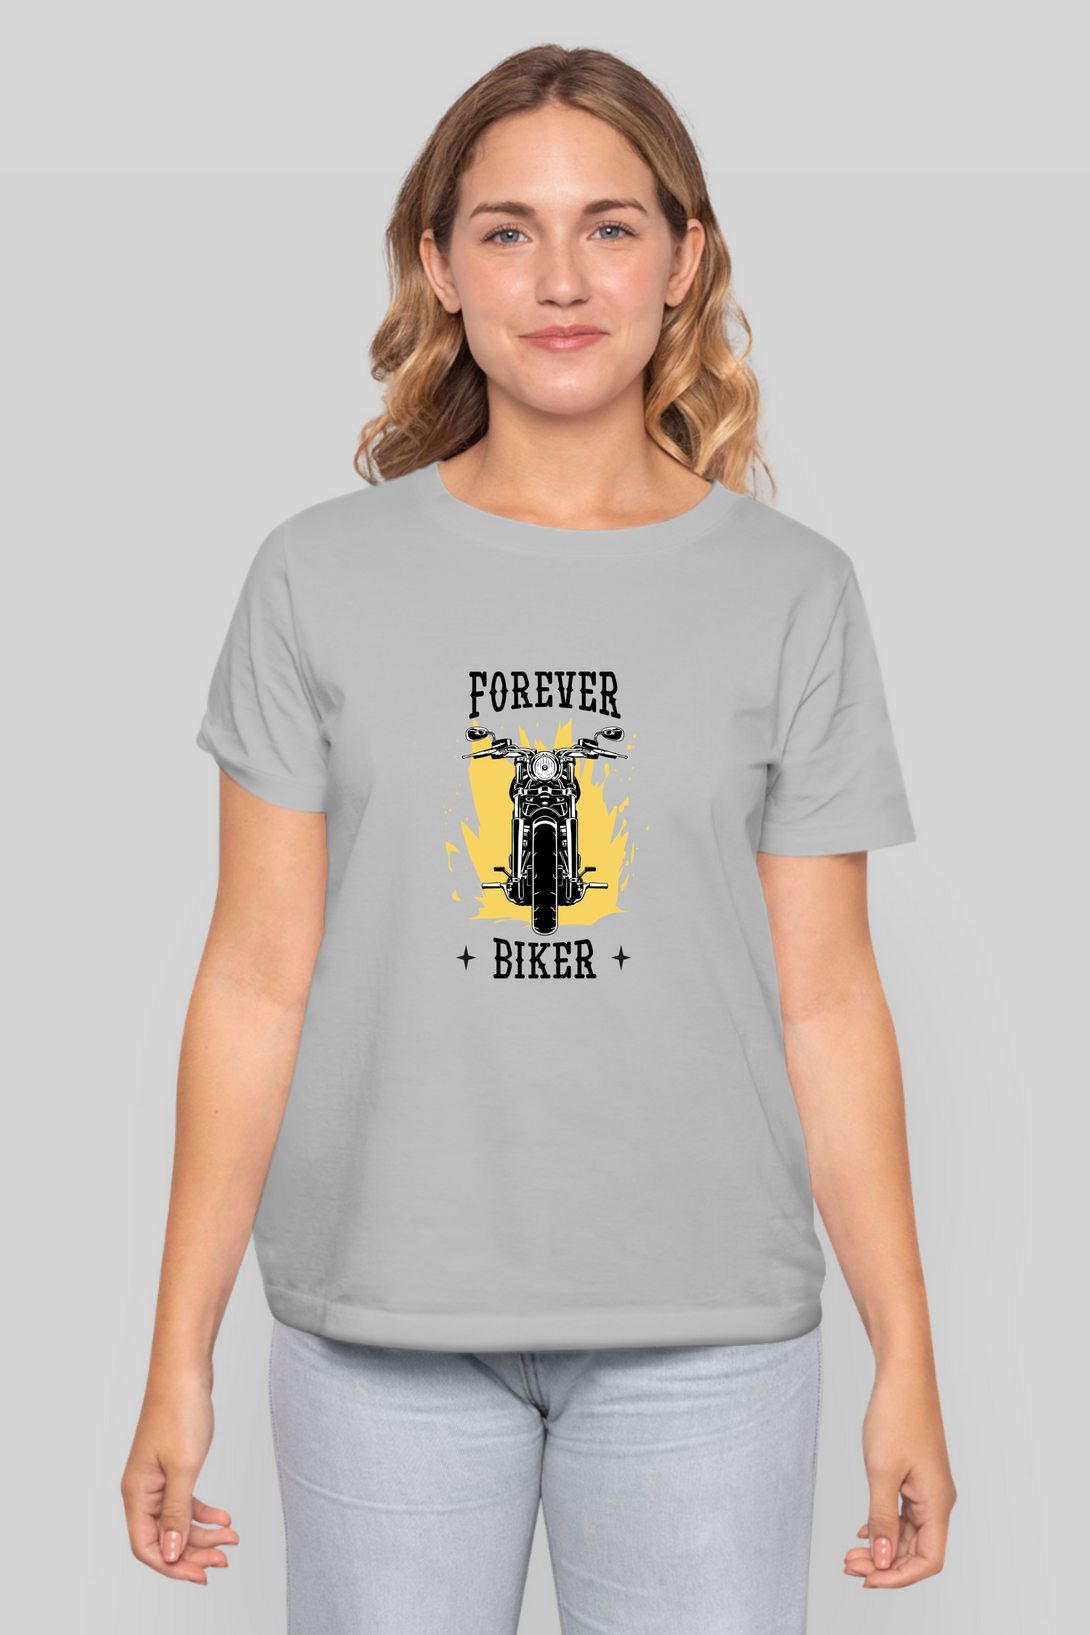 Forever Biker Printed T-Shirt For Women - WowWaves - 6